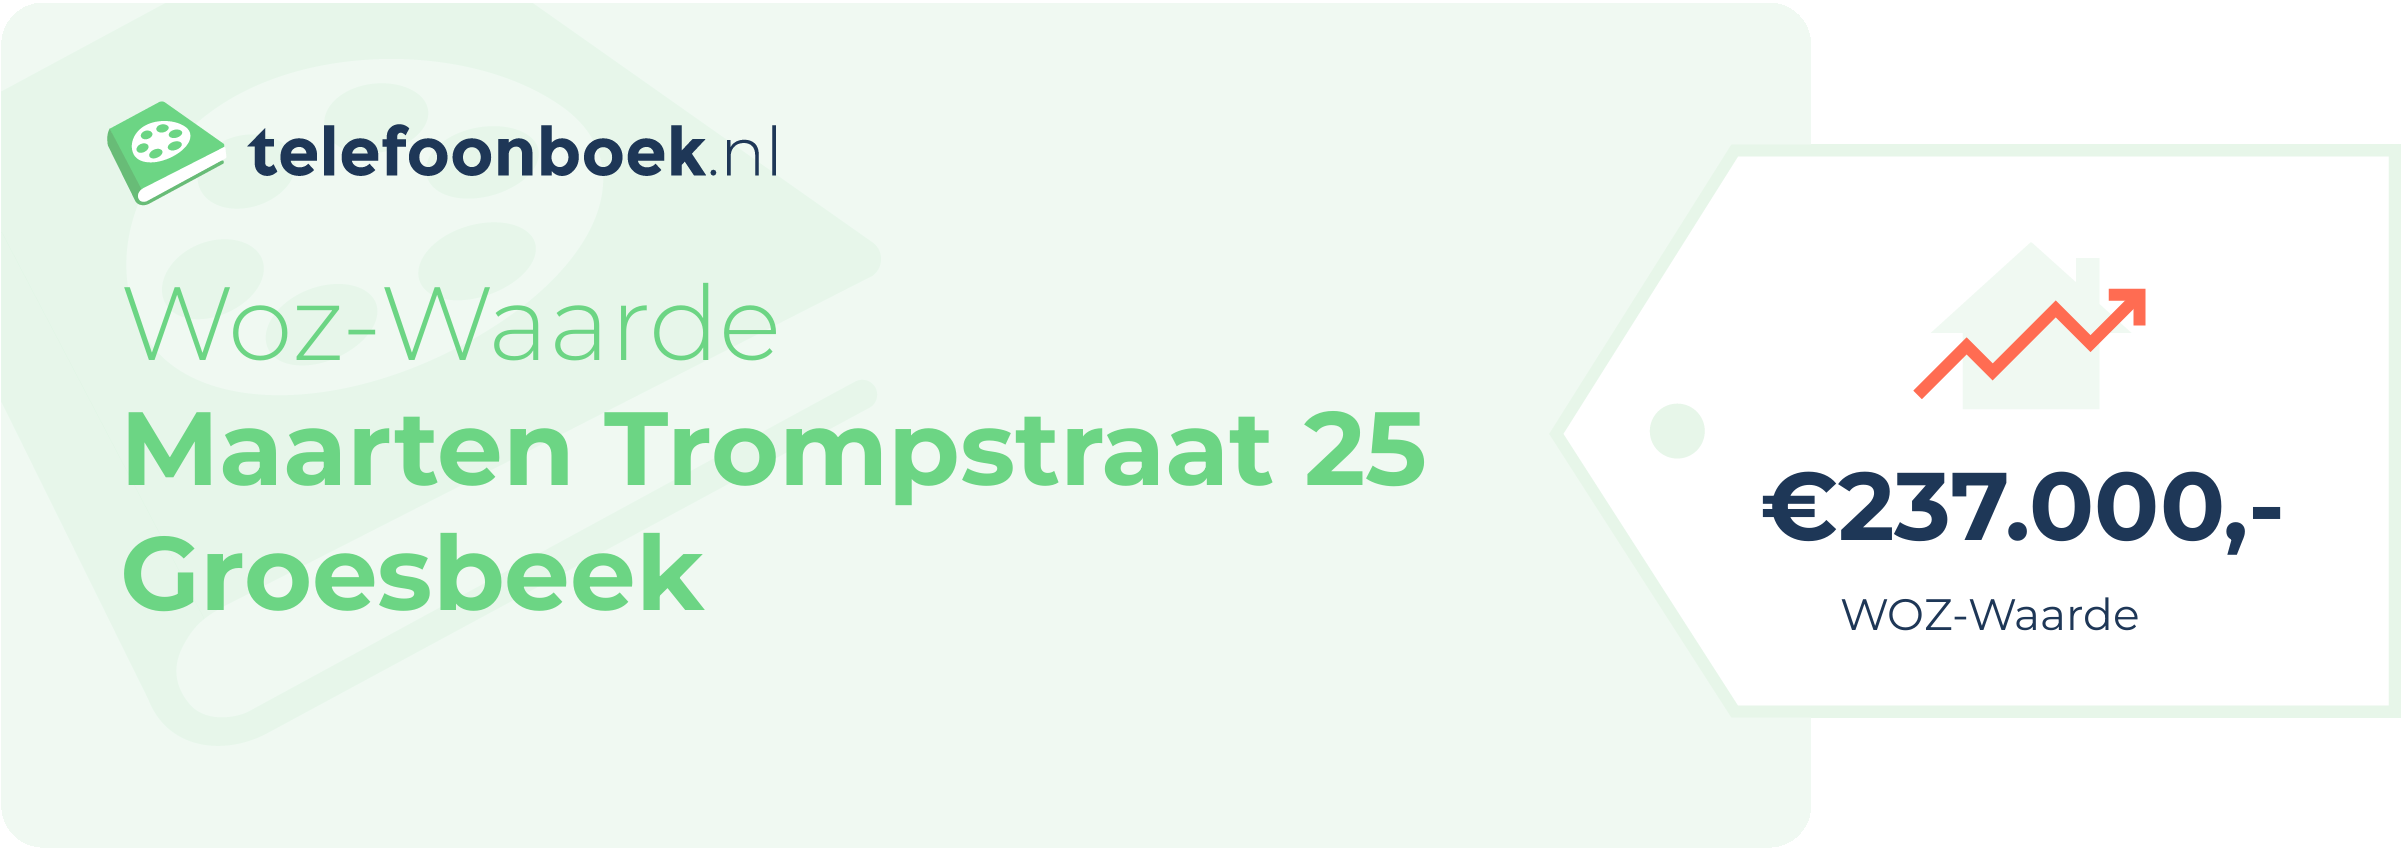 WOZ-waarde Maarten Trompstraat 25 Groesbeek